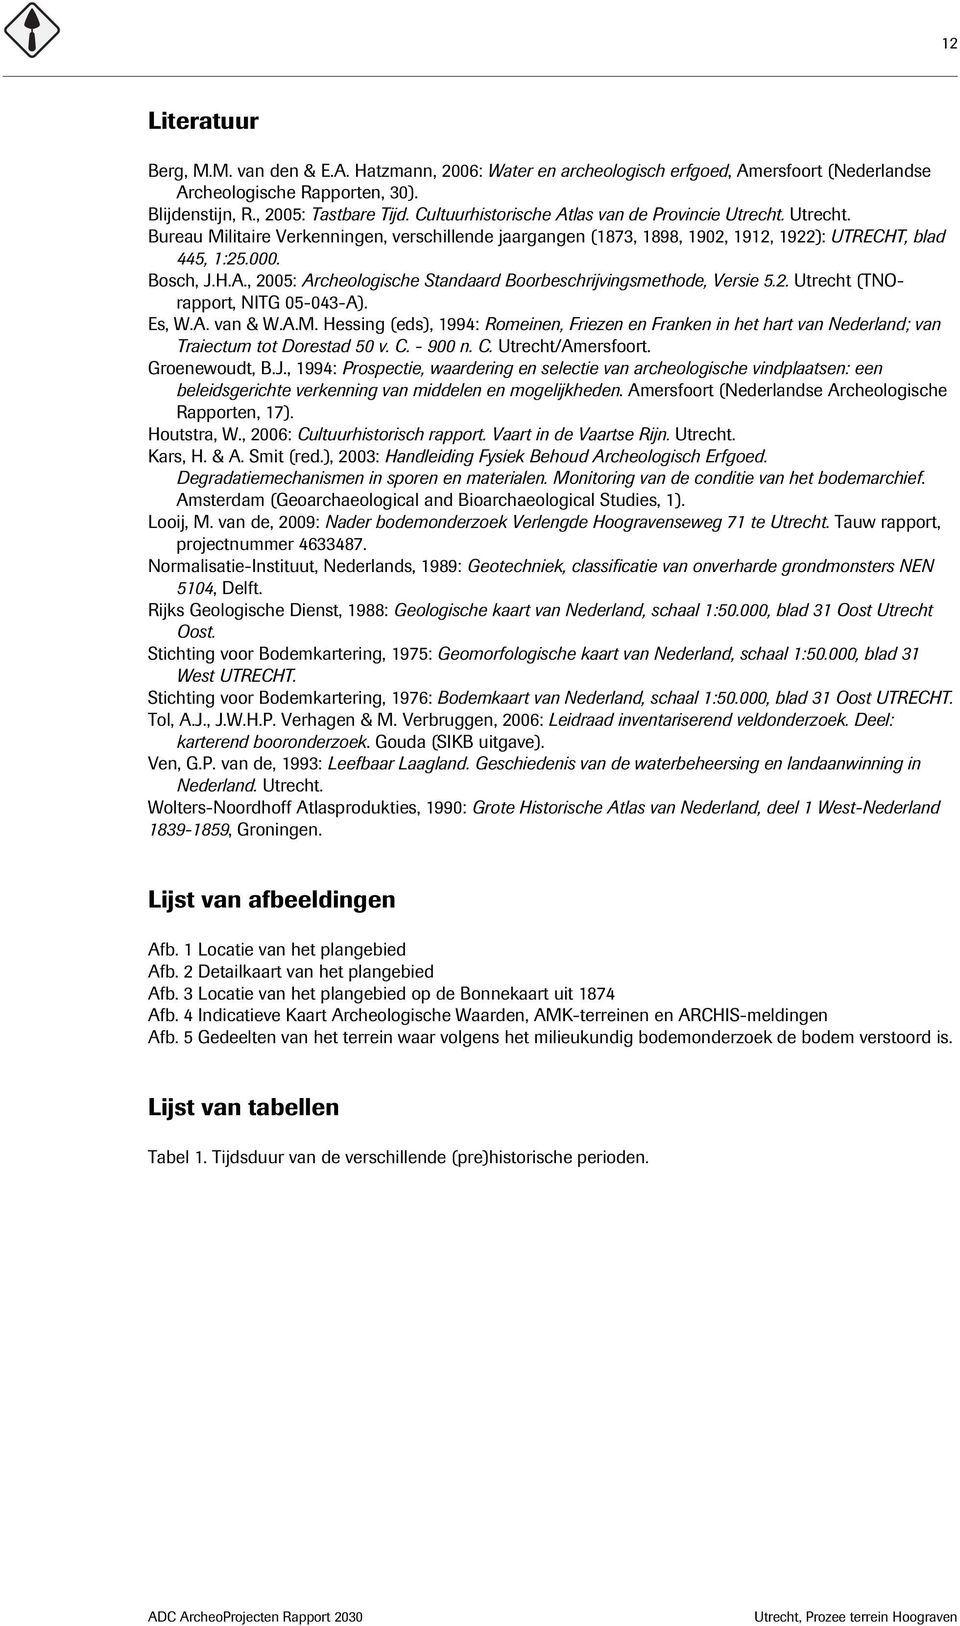 2. Utrecht (TNOrapport, NITG 05-043-A). Es, W.A. van & W.A.M. Hessing (eds), 1994: Romeinen, Friezen en Franken in het hart van Nederland; van Traiectum tot Dorestad 50 v. C. - 900 n. C. Utrecht/Amersfoort.